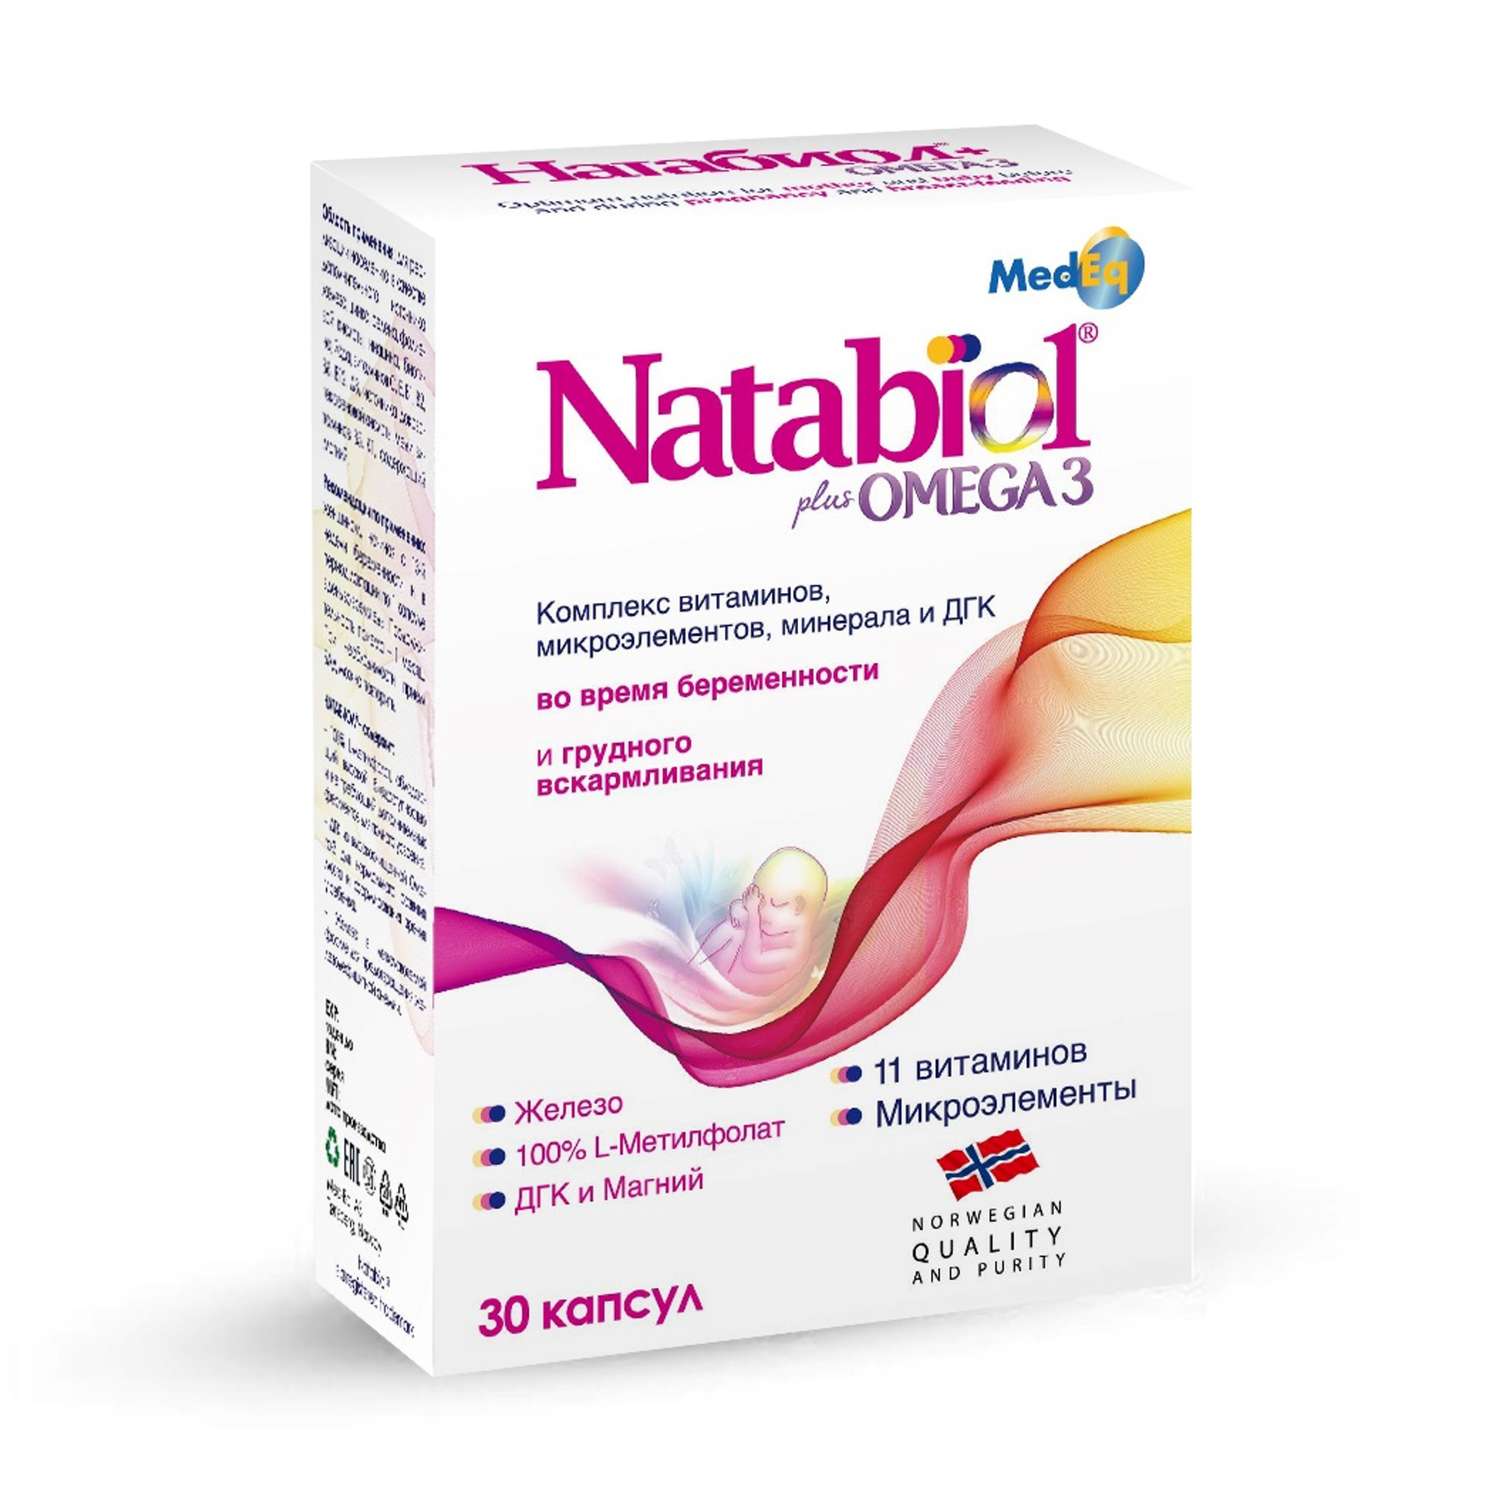 Биологически активная добавка Натабиол Омега 3 1660мг 30таблеток - фото 1